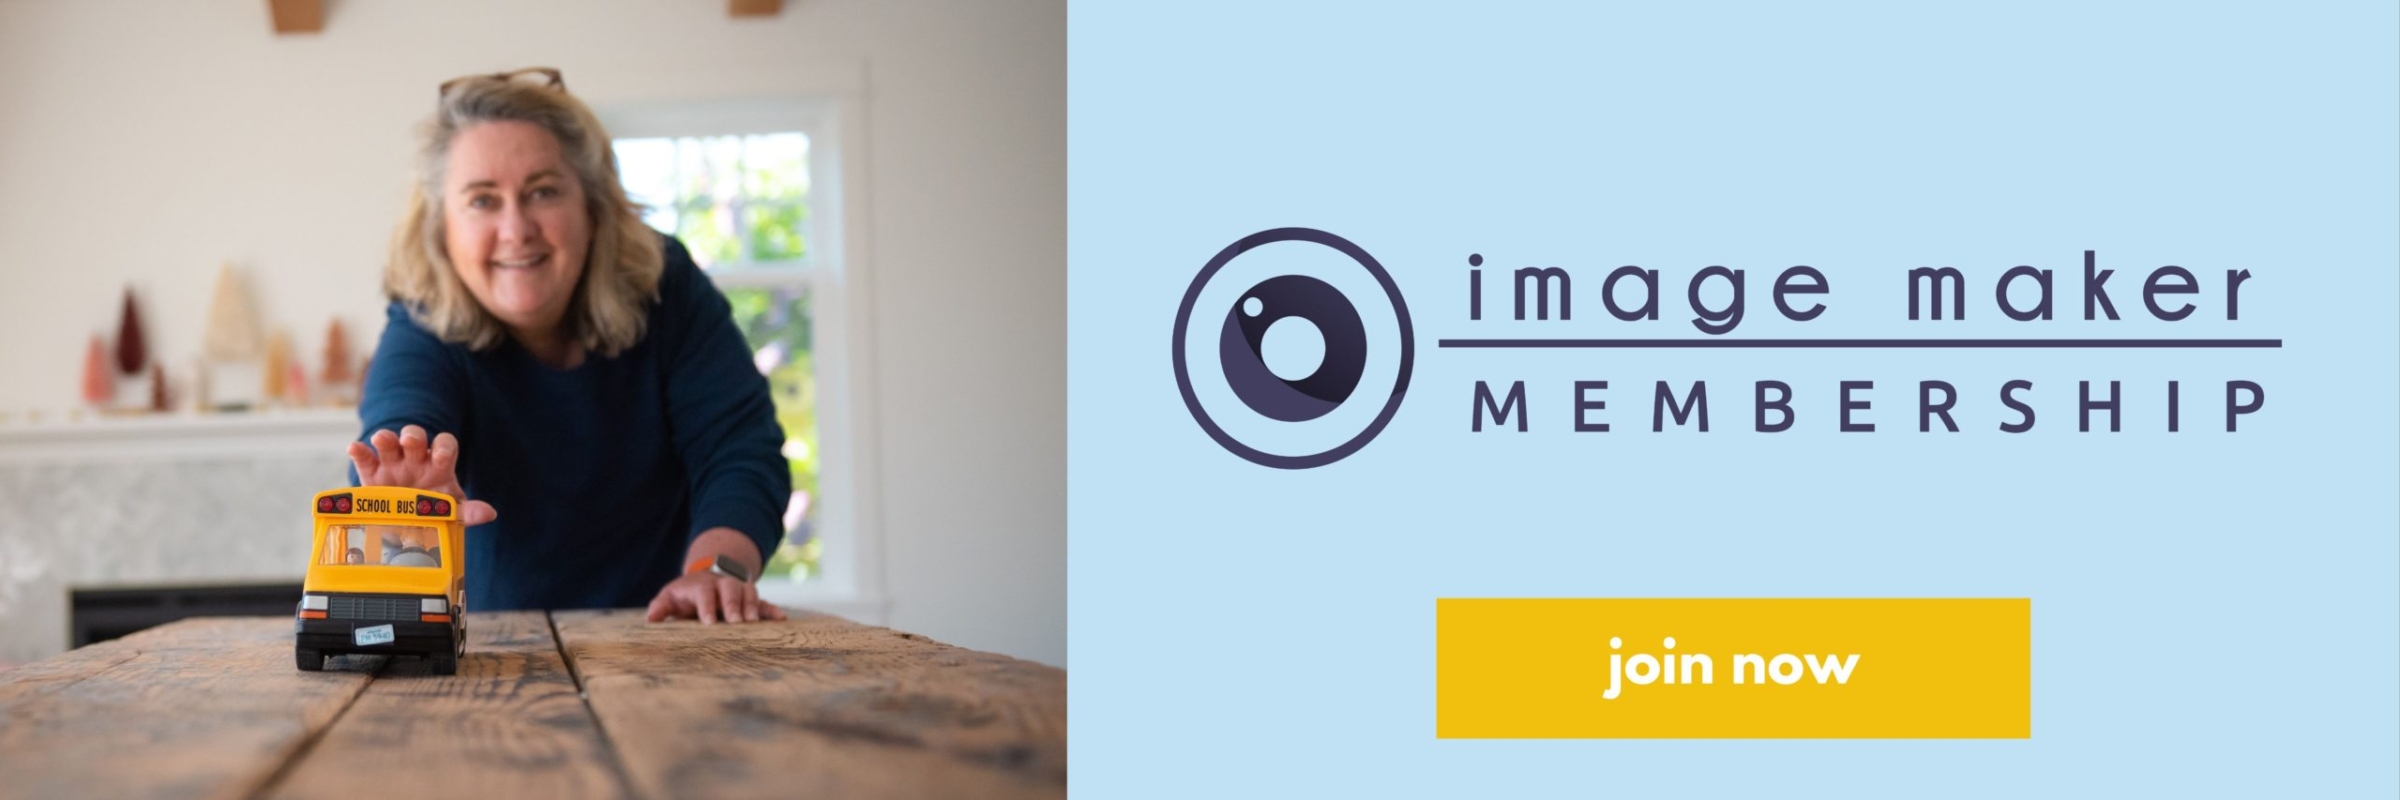 Join Image Maker Membership